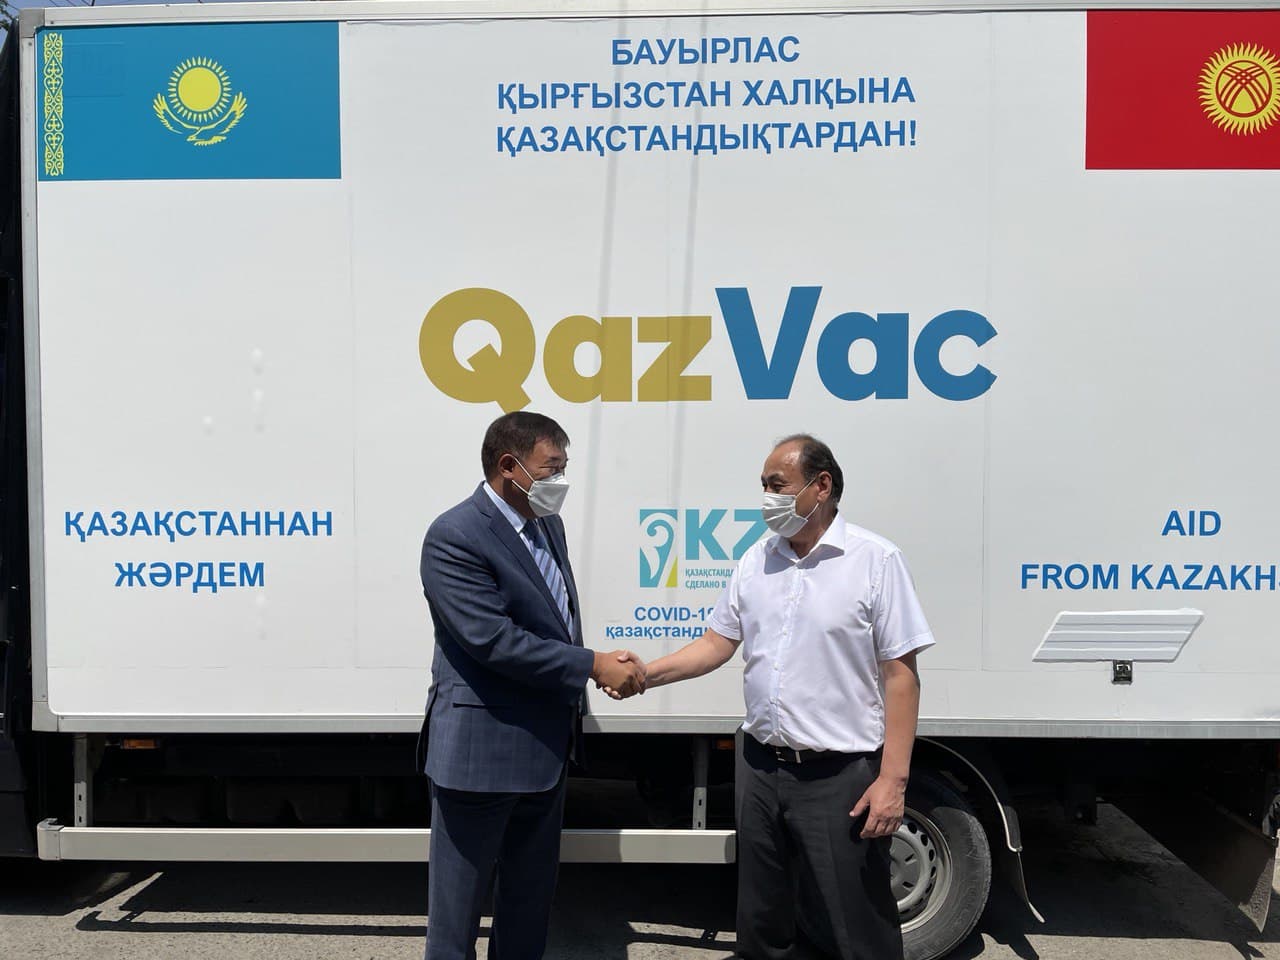 В рамках сотрудничества в борьбе с пандемией COVID-19 в Кыргызстан была доставлена гуманитарная помощь из Казахстана в виде 25 000 доз казахстанской инактивированной вакцины «QazVac»